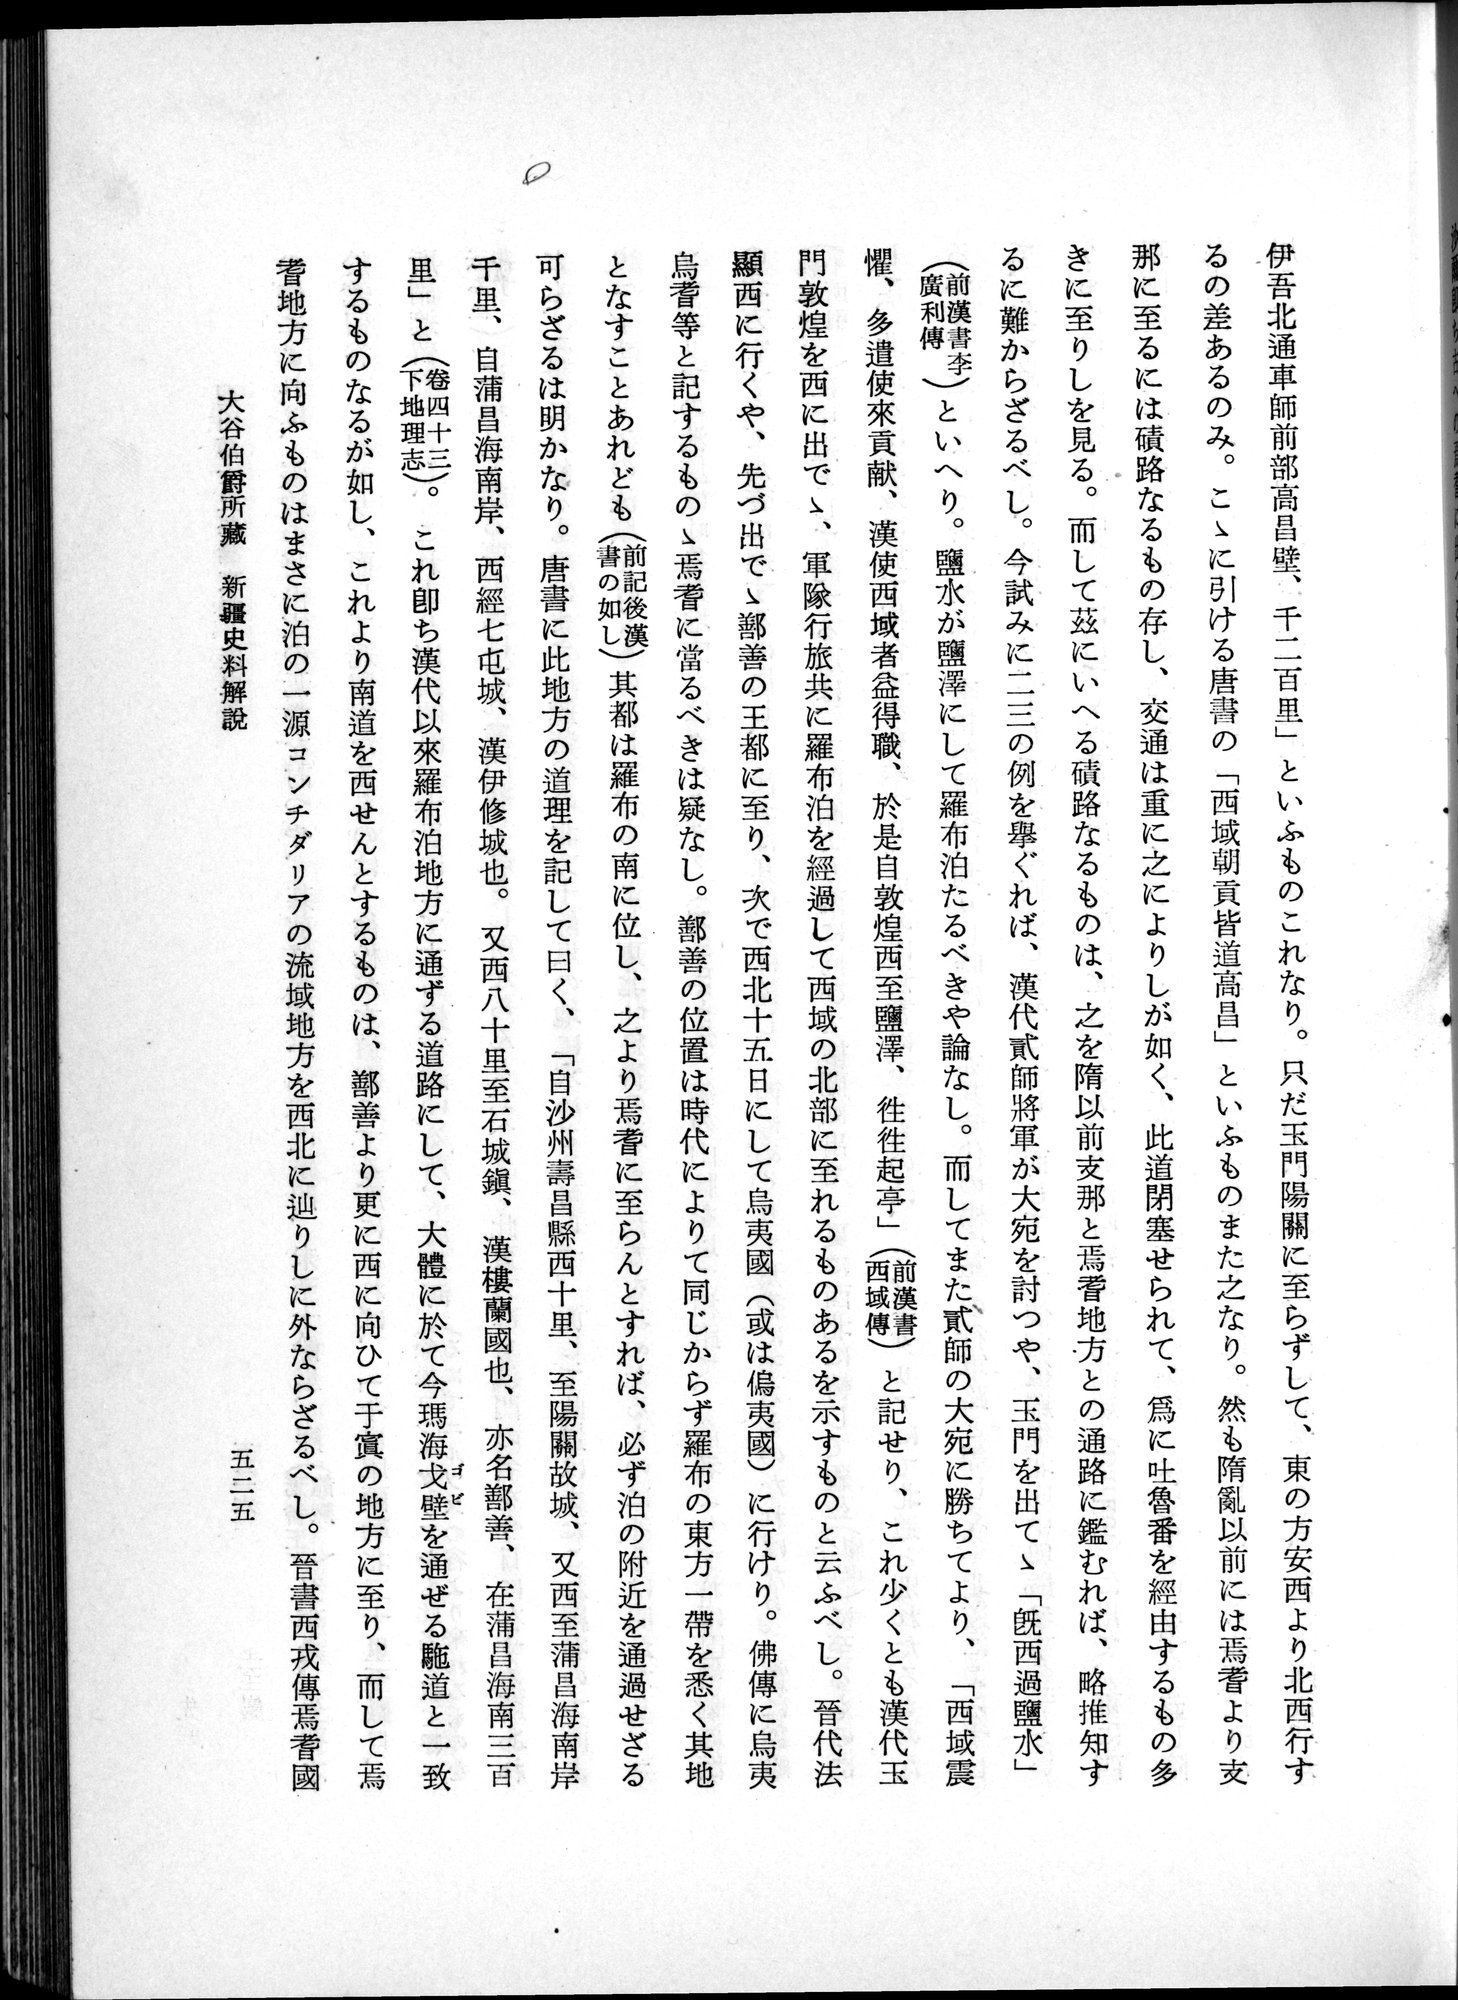 羽田博士史学論文集 : vol.1 / Page 563 (Grayscale High Resolution Image)